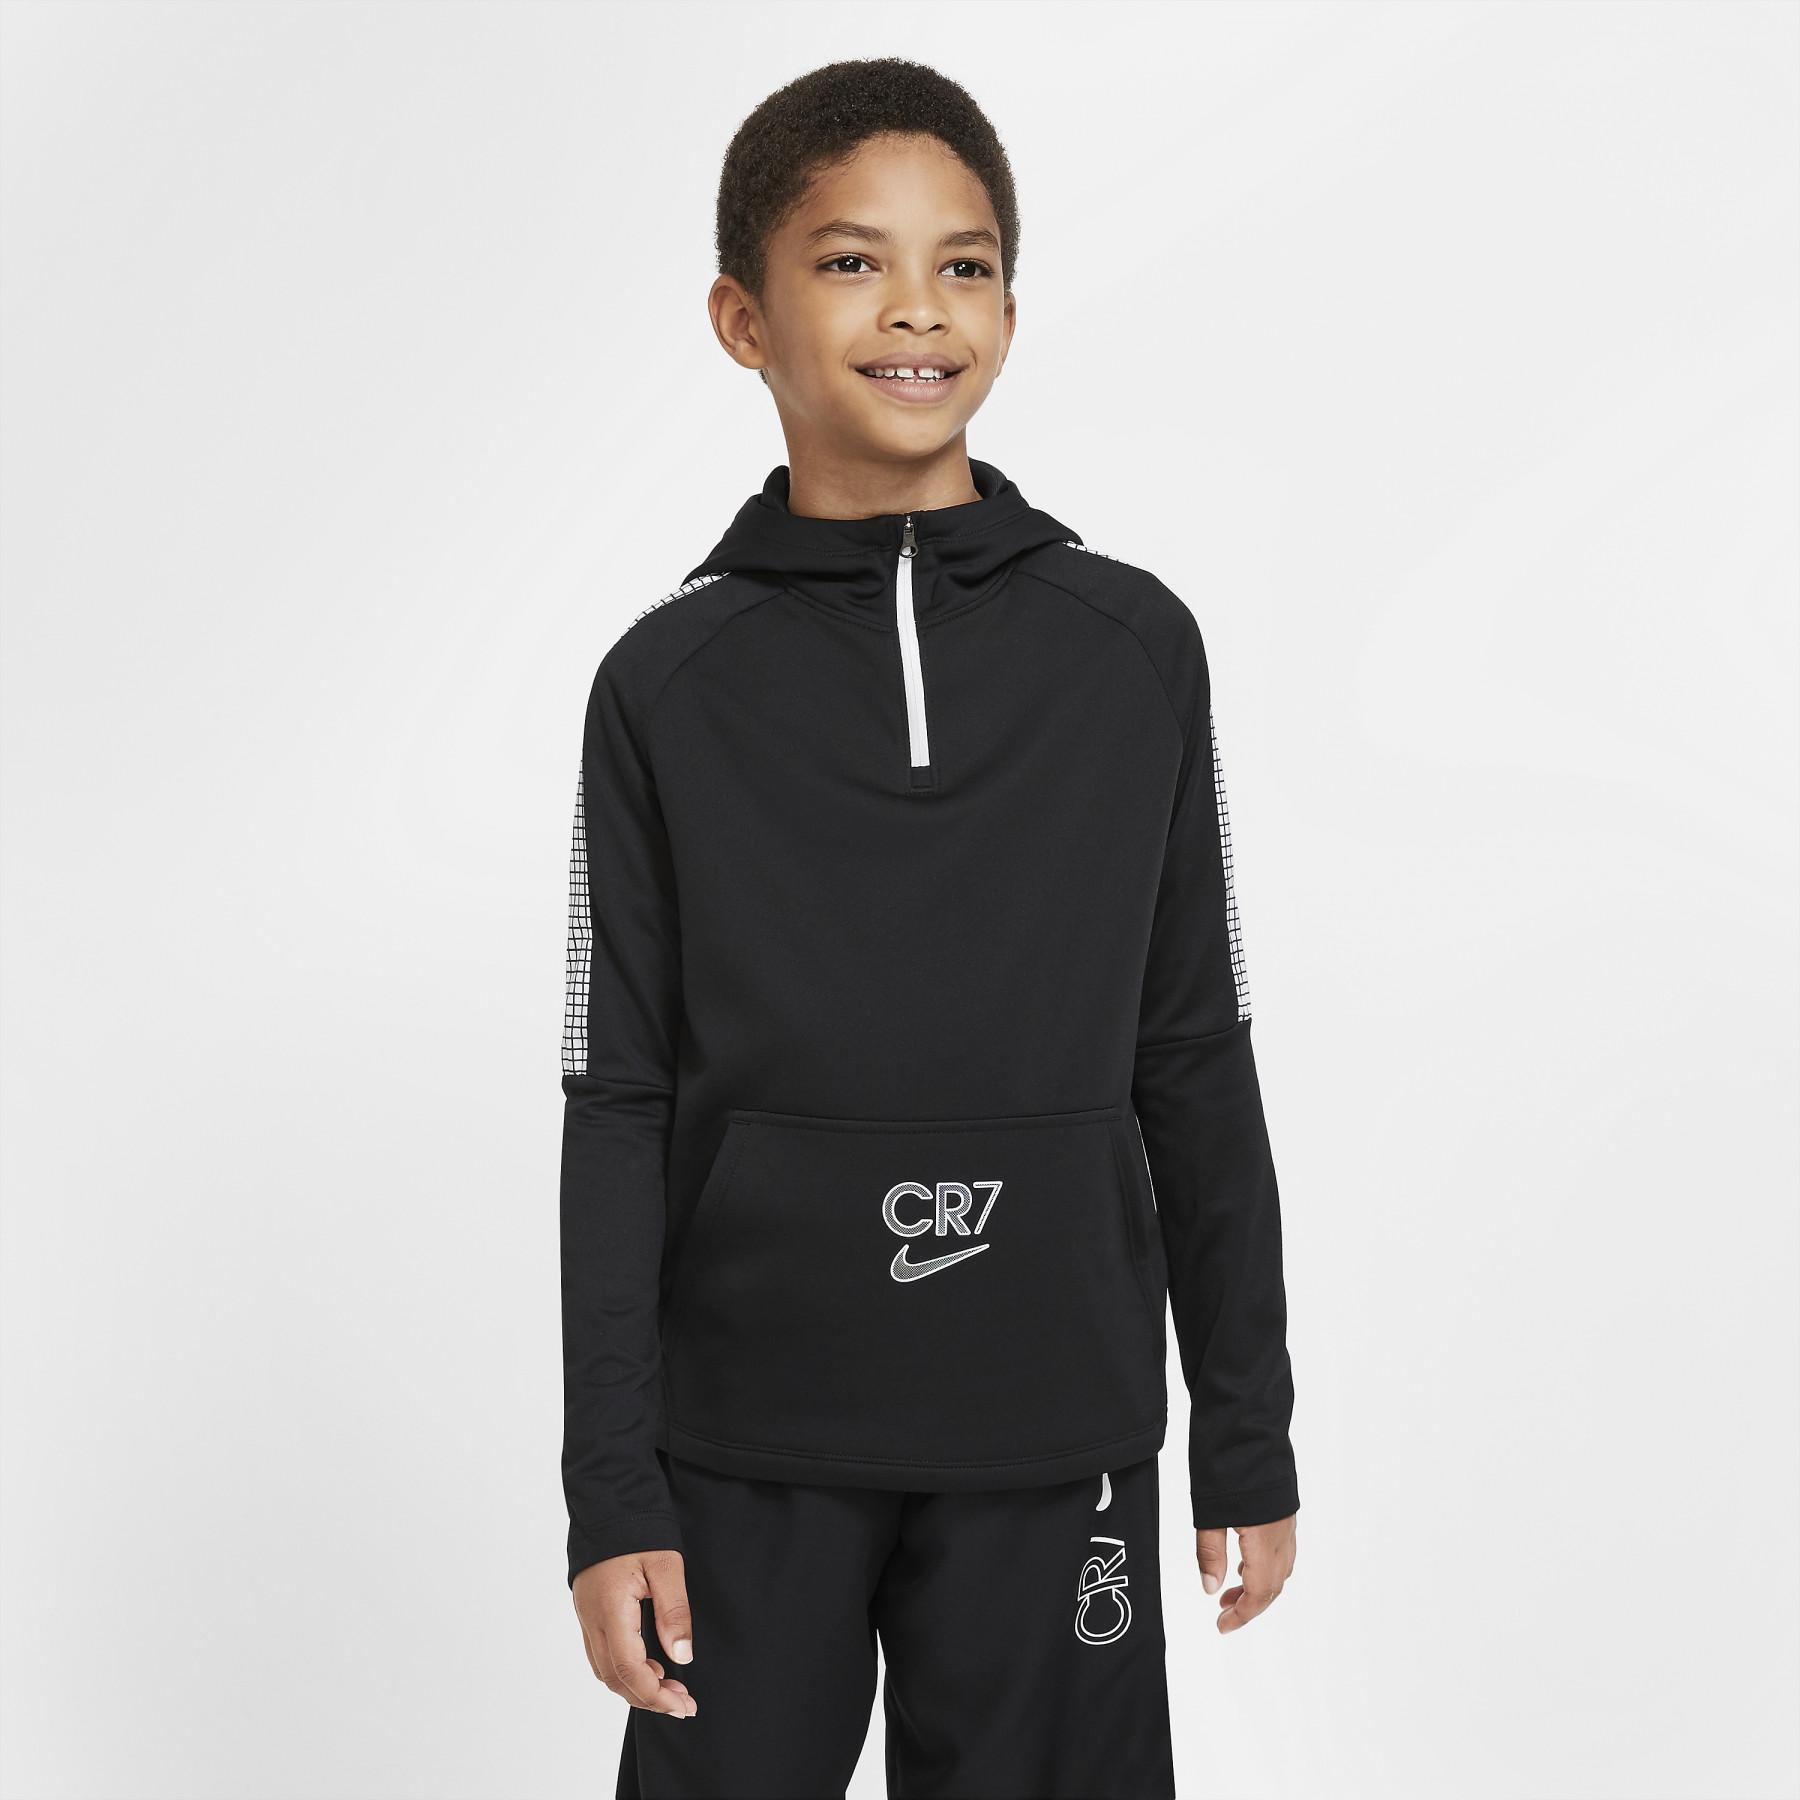 Kinder sweatshirt Nike Dri-FIT CR7